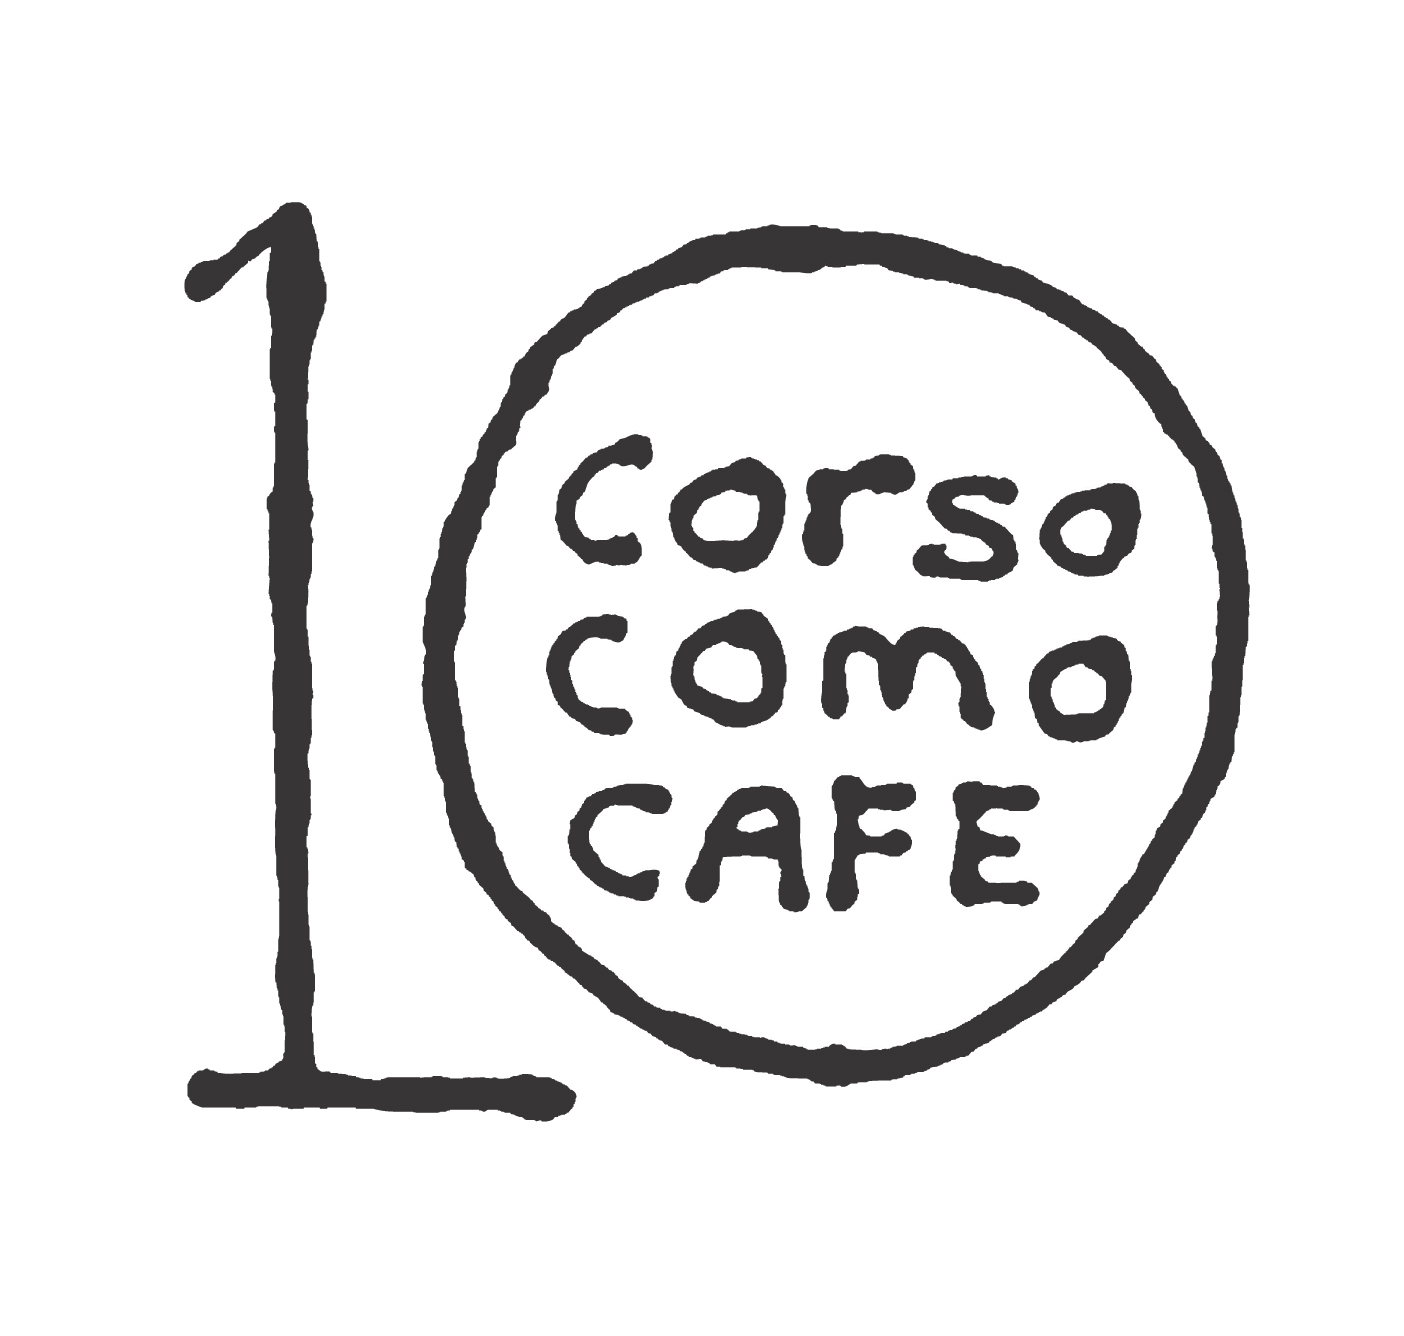 10 CORSO COMO CAFE (Samsung C&T)